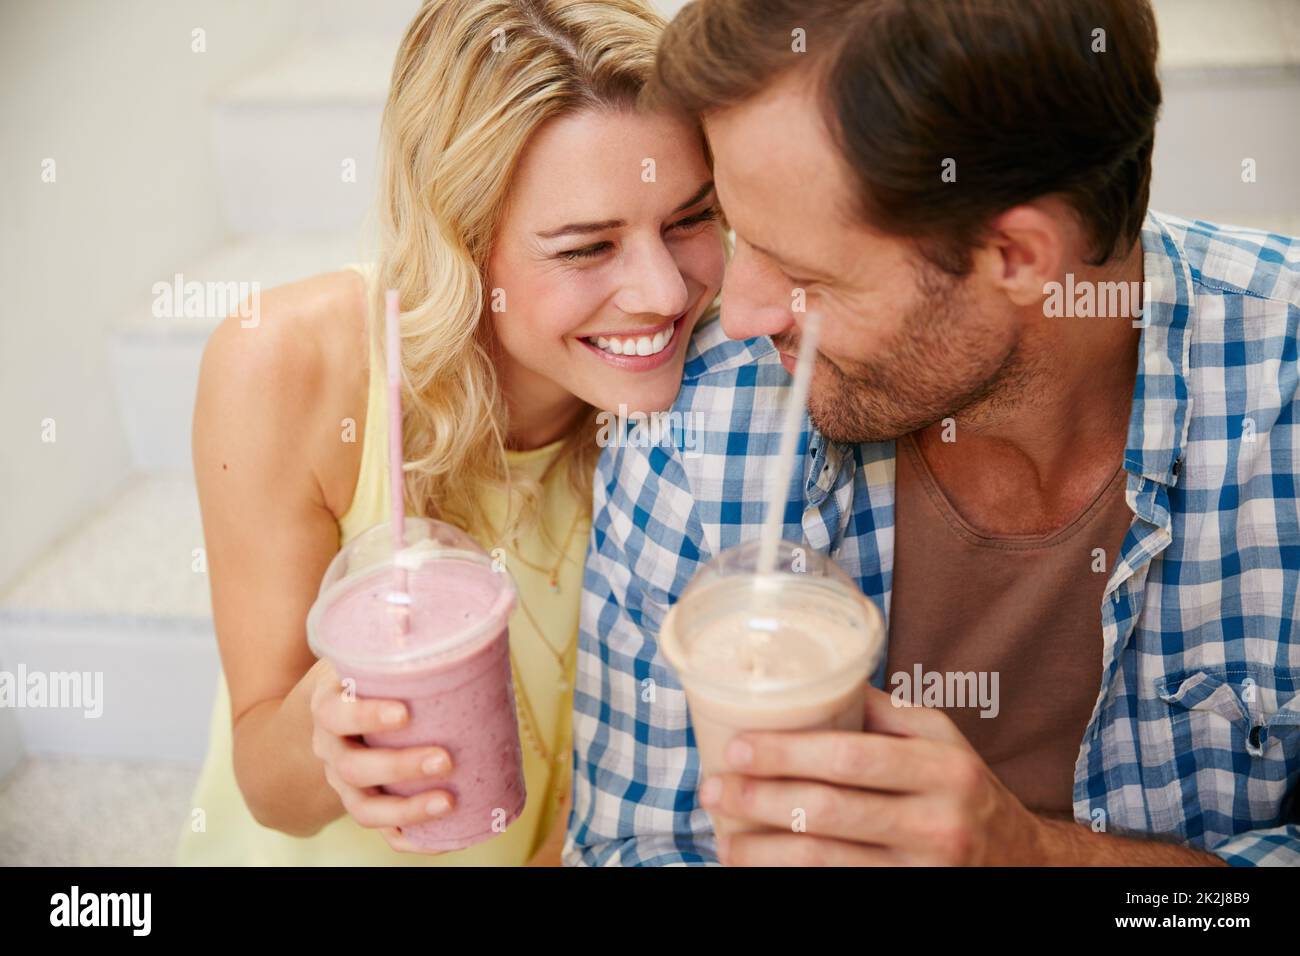 Je ne peux pas me faire enoughet les smoothies sont super aussi. Photo d'un couple heureux en dégustant des cocktails rafraîchissants ensemble. Banque D'Images